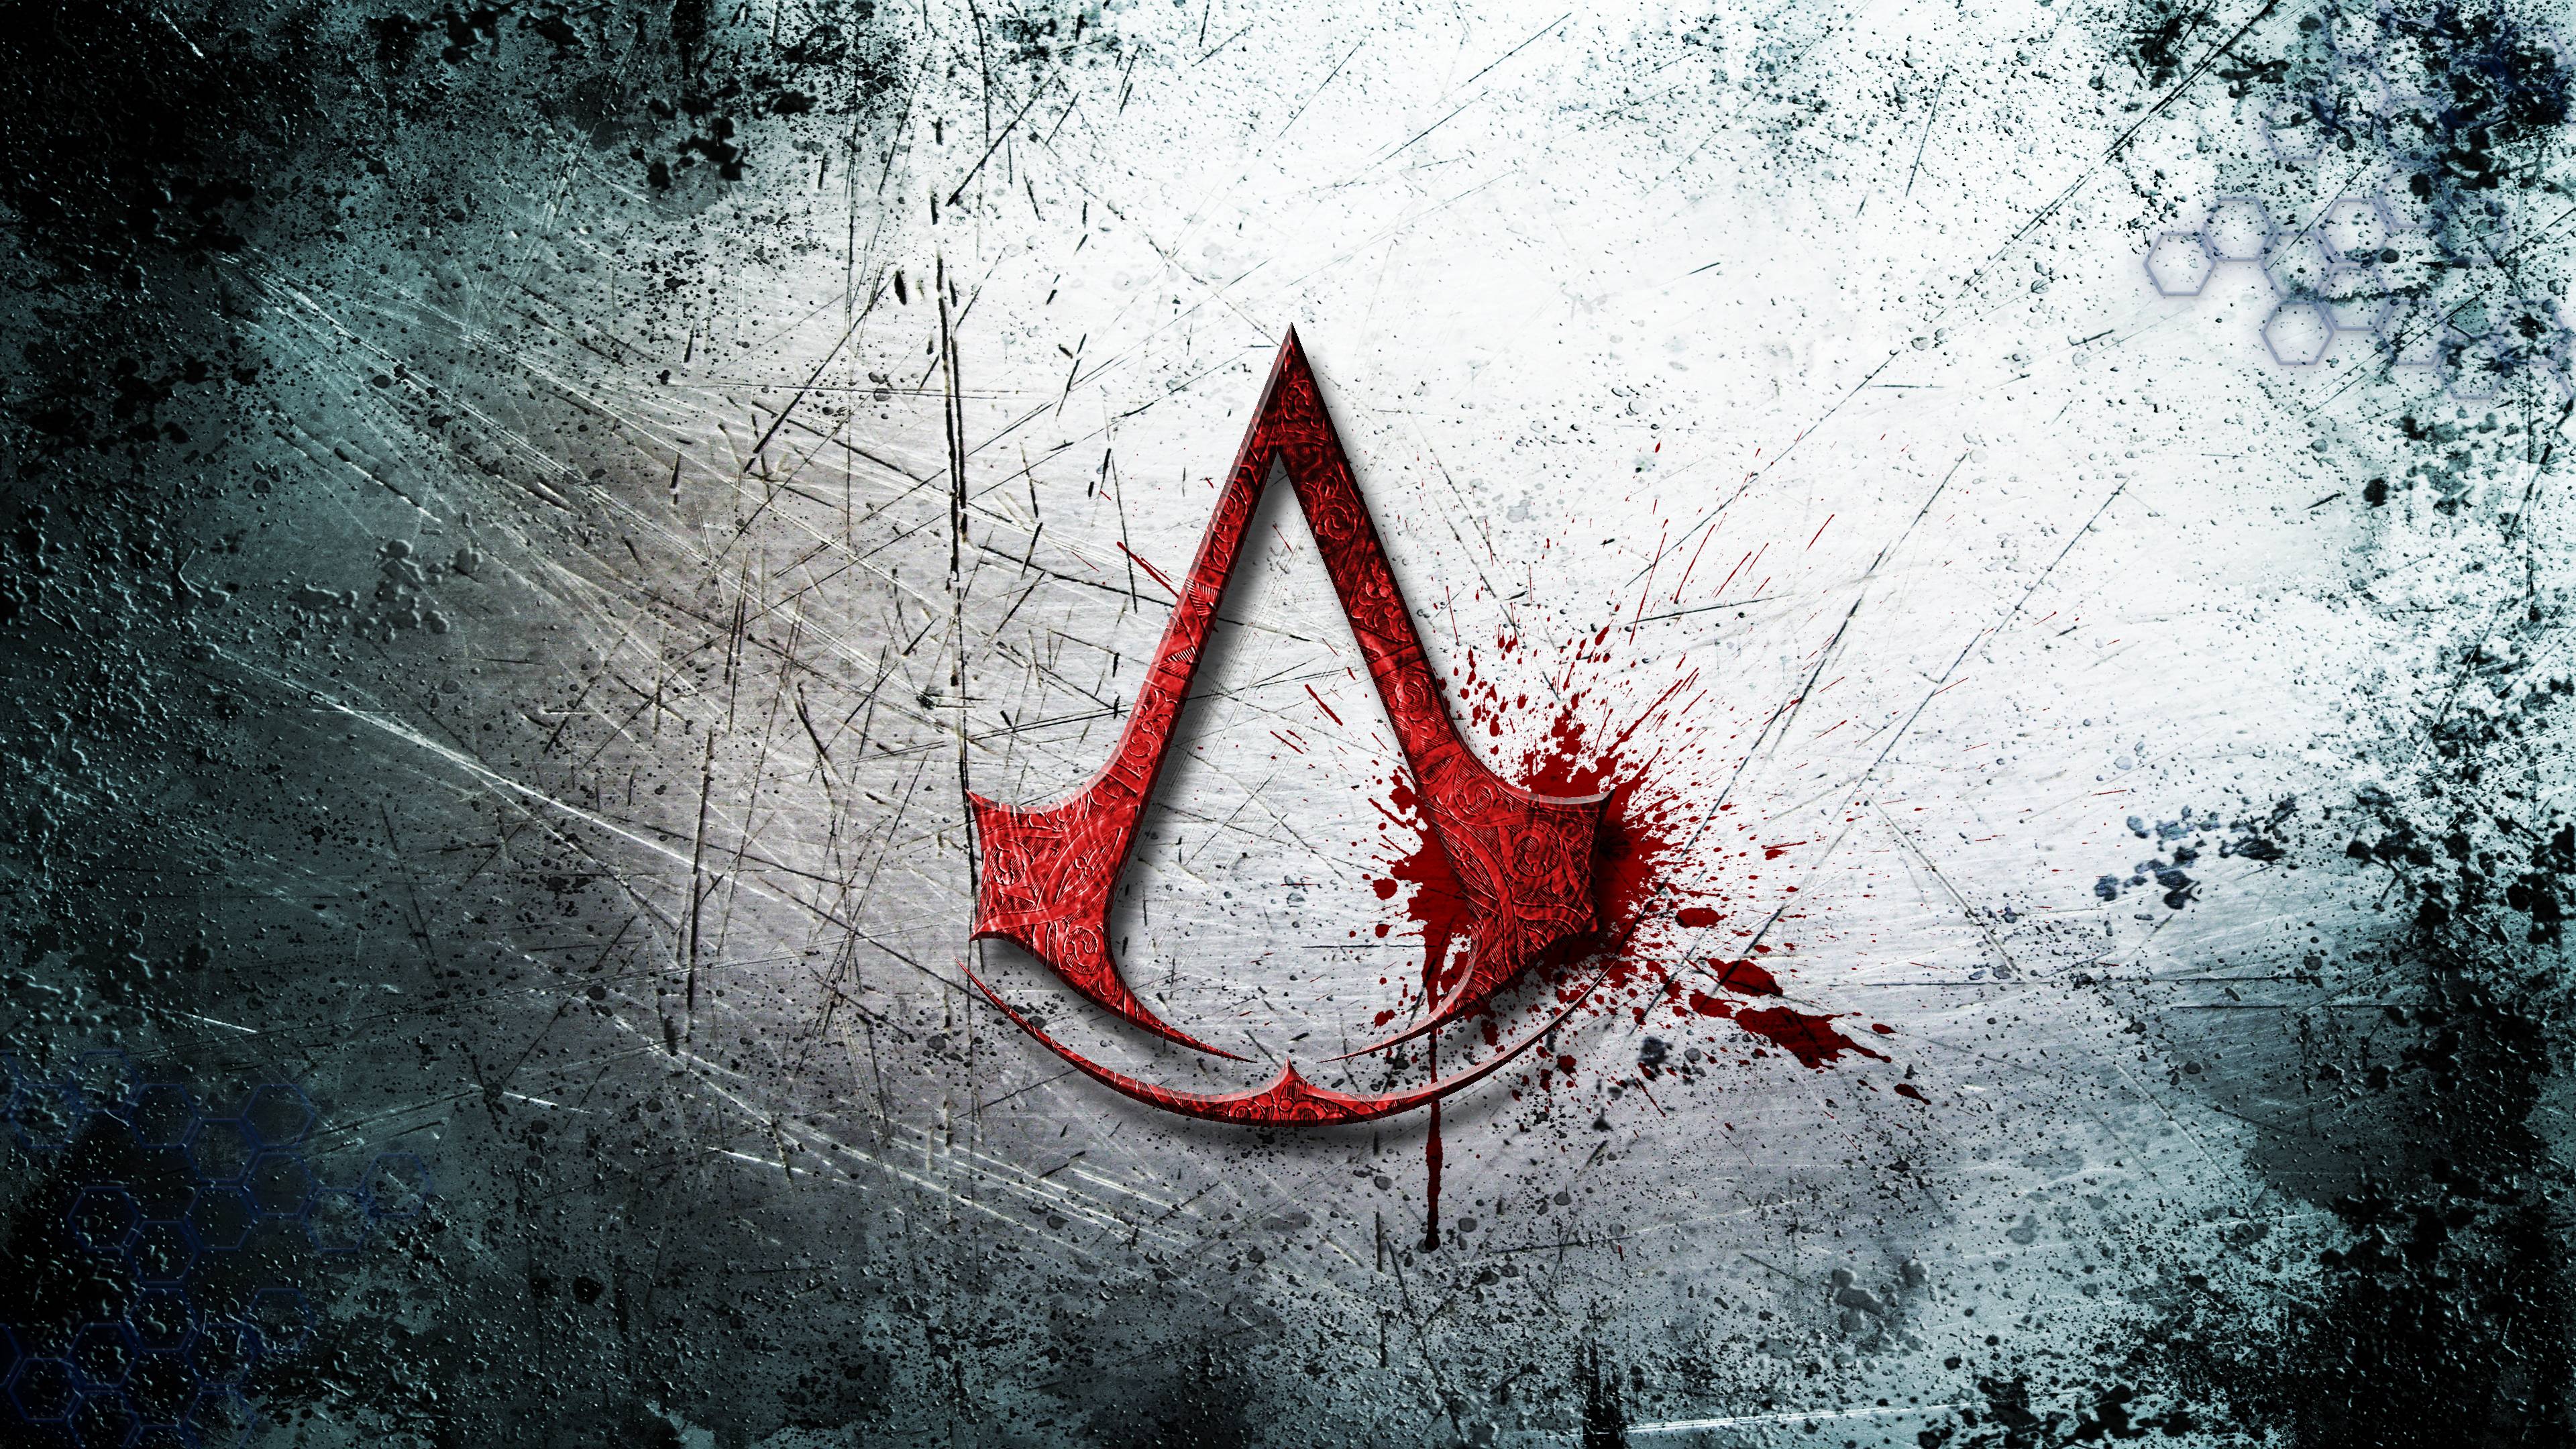 Assassins Creed Wallpaper | 3840x2160 | ID:39572 | Asasssin's